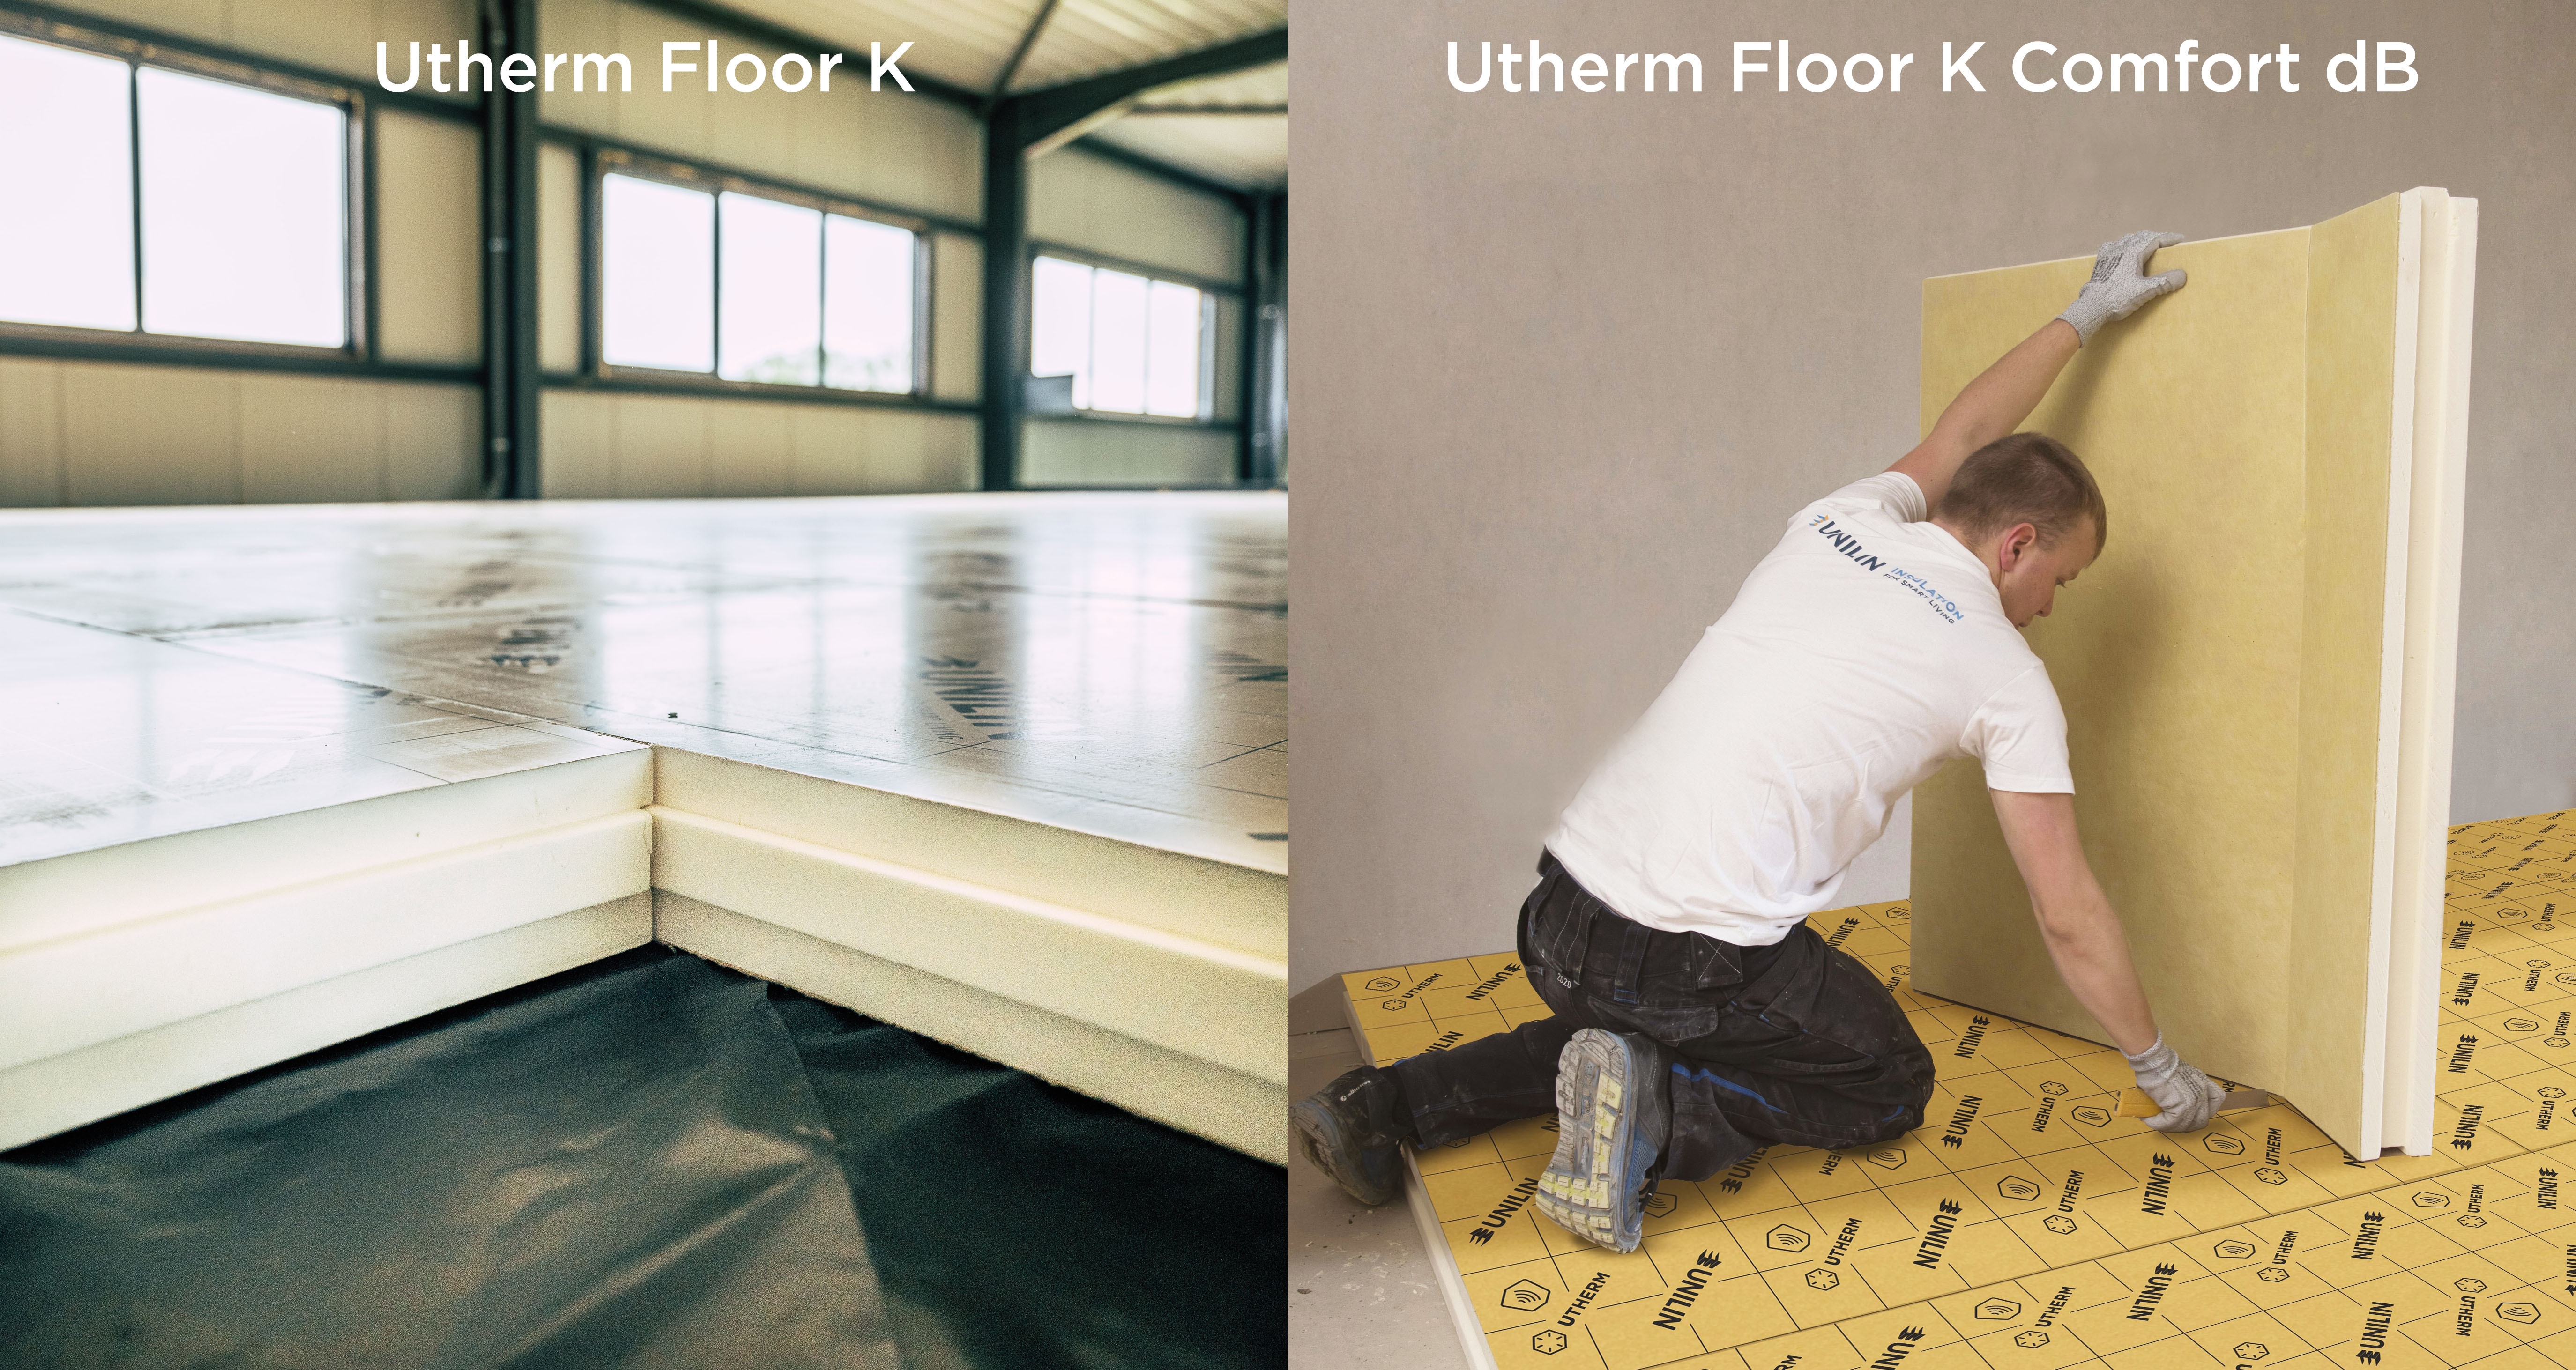 Utherm Floor K et Utherm Floor K Comfort dB